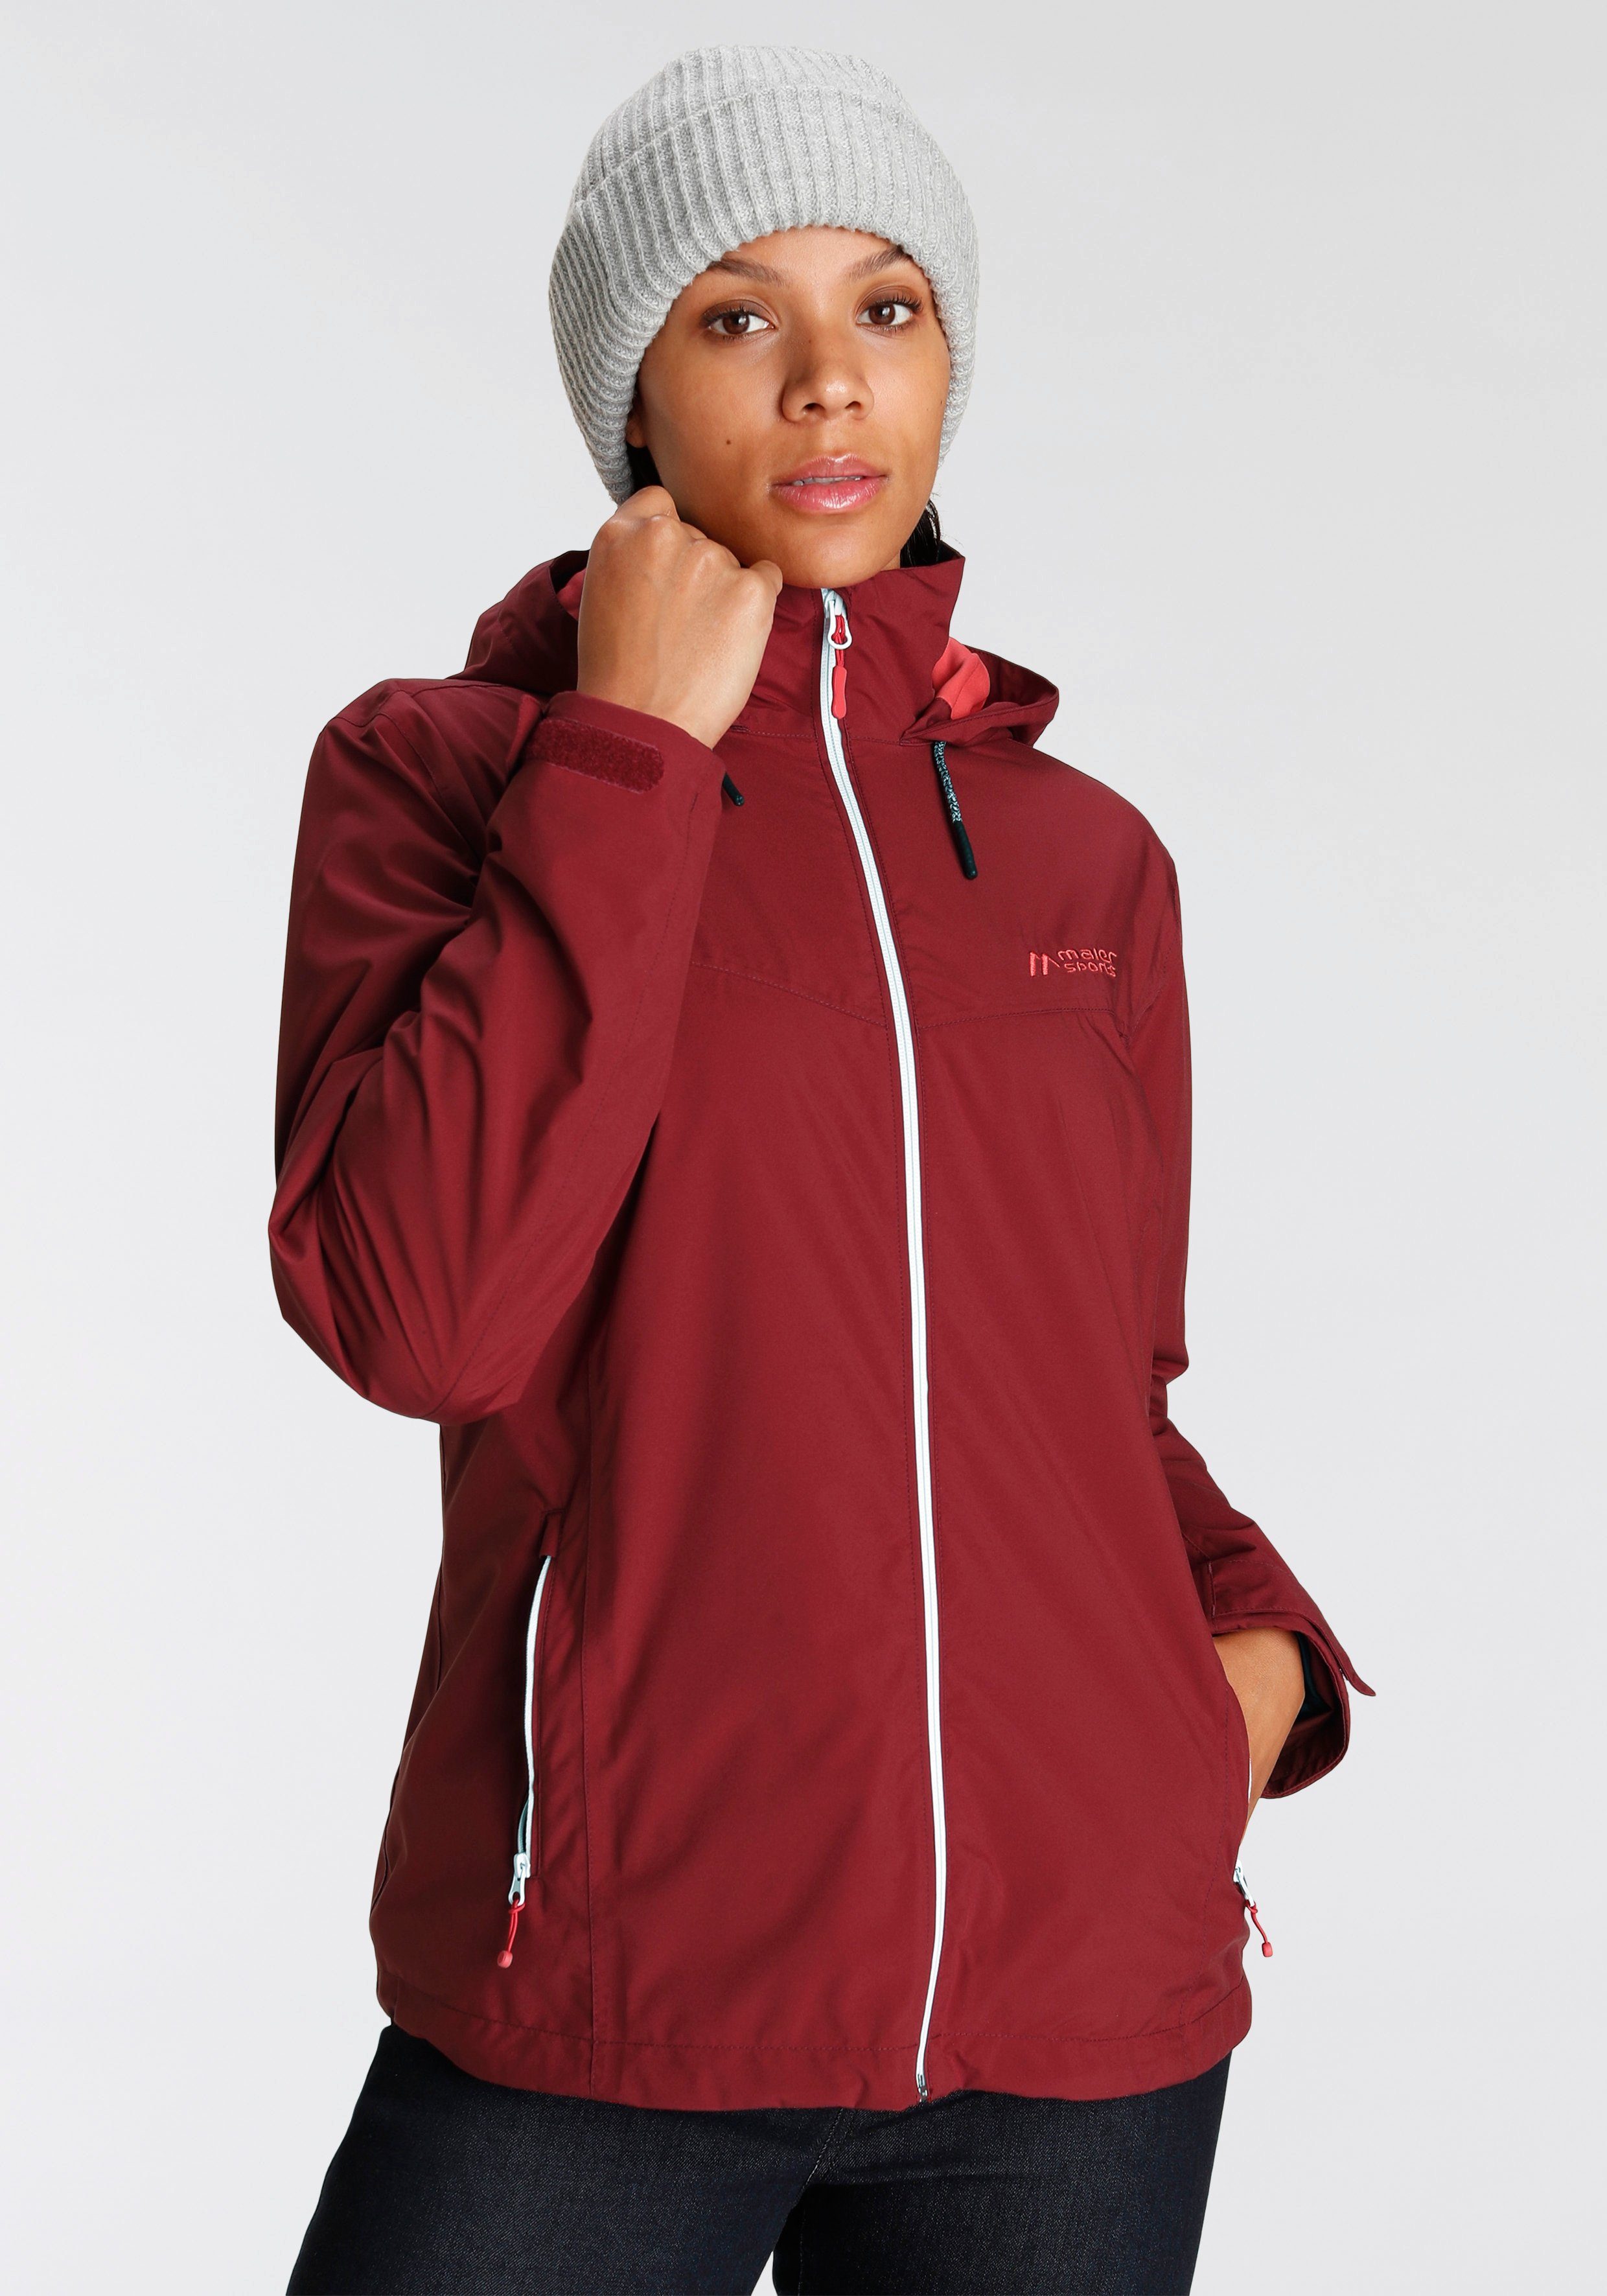 Maier Outdoorjacke rost-rot Übergangsjacke, Wasserdichte erhältlich auch in Sports Größen großen